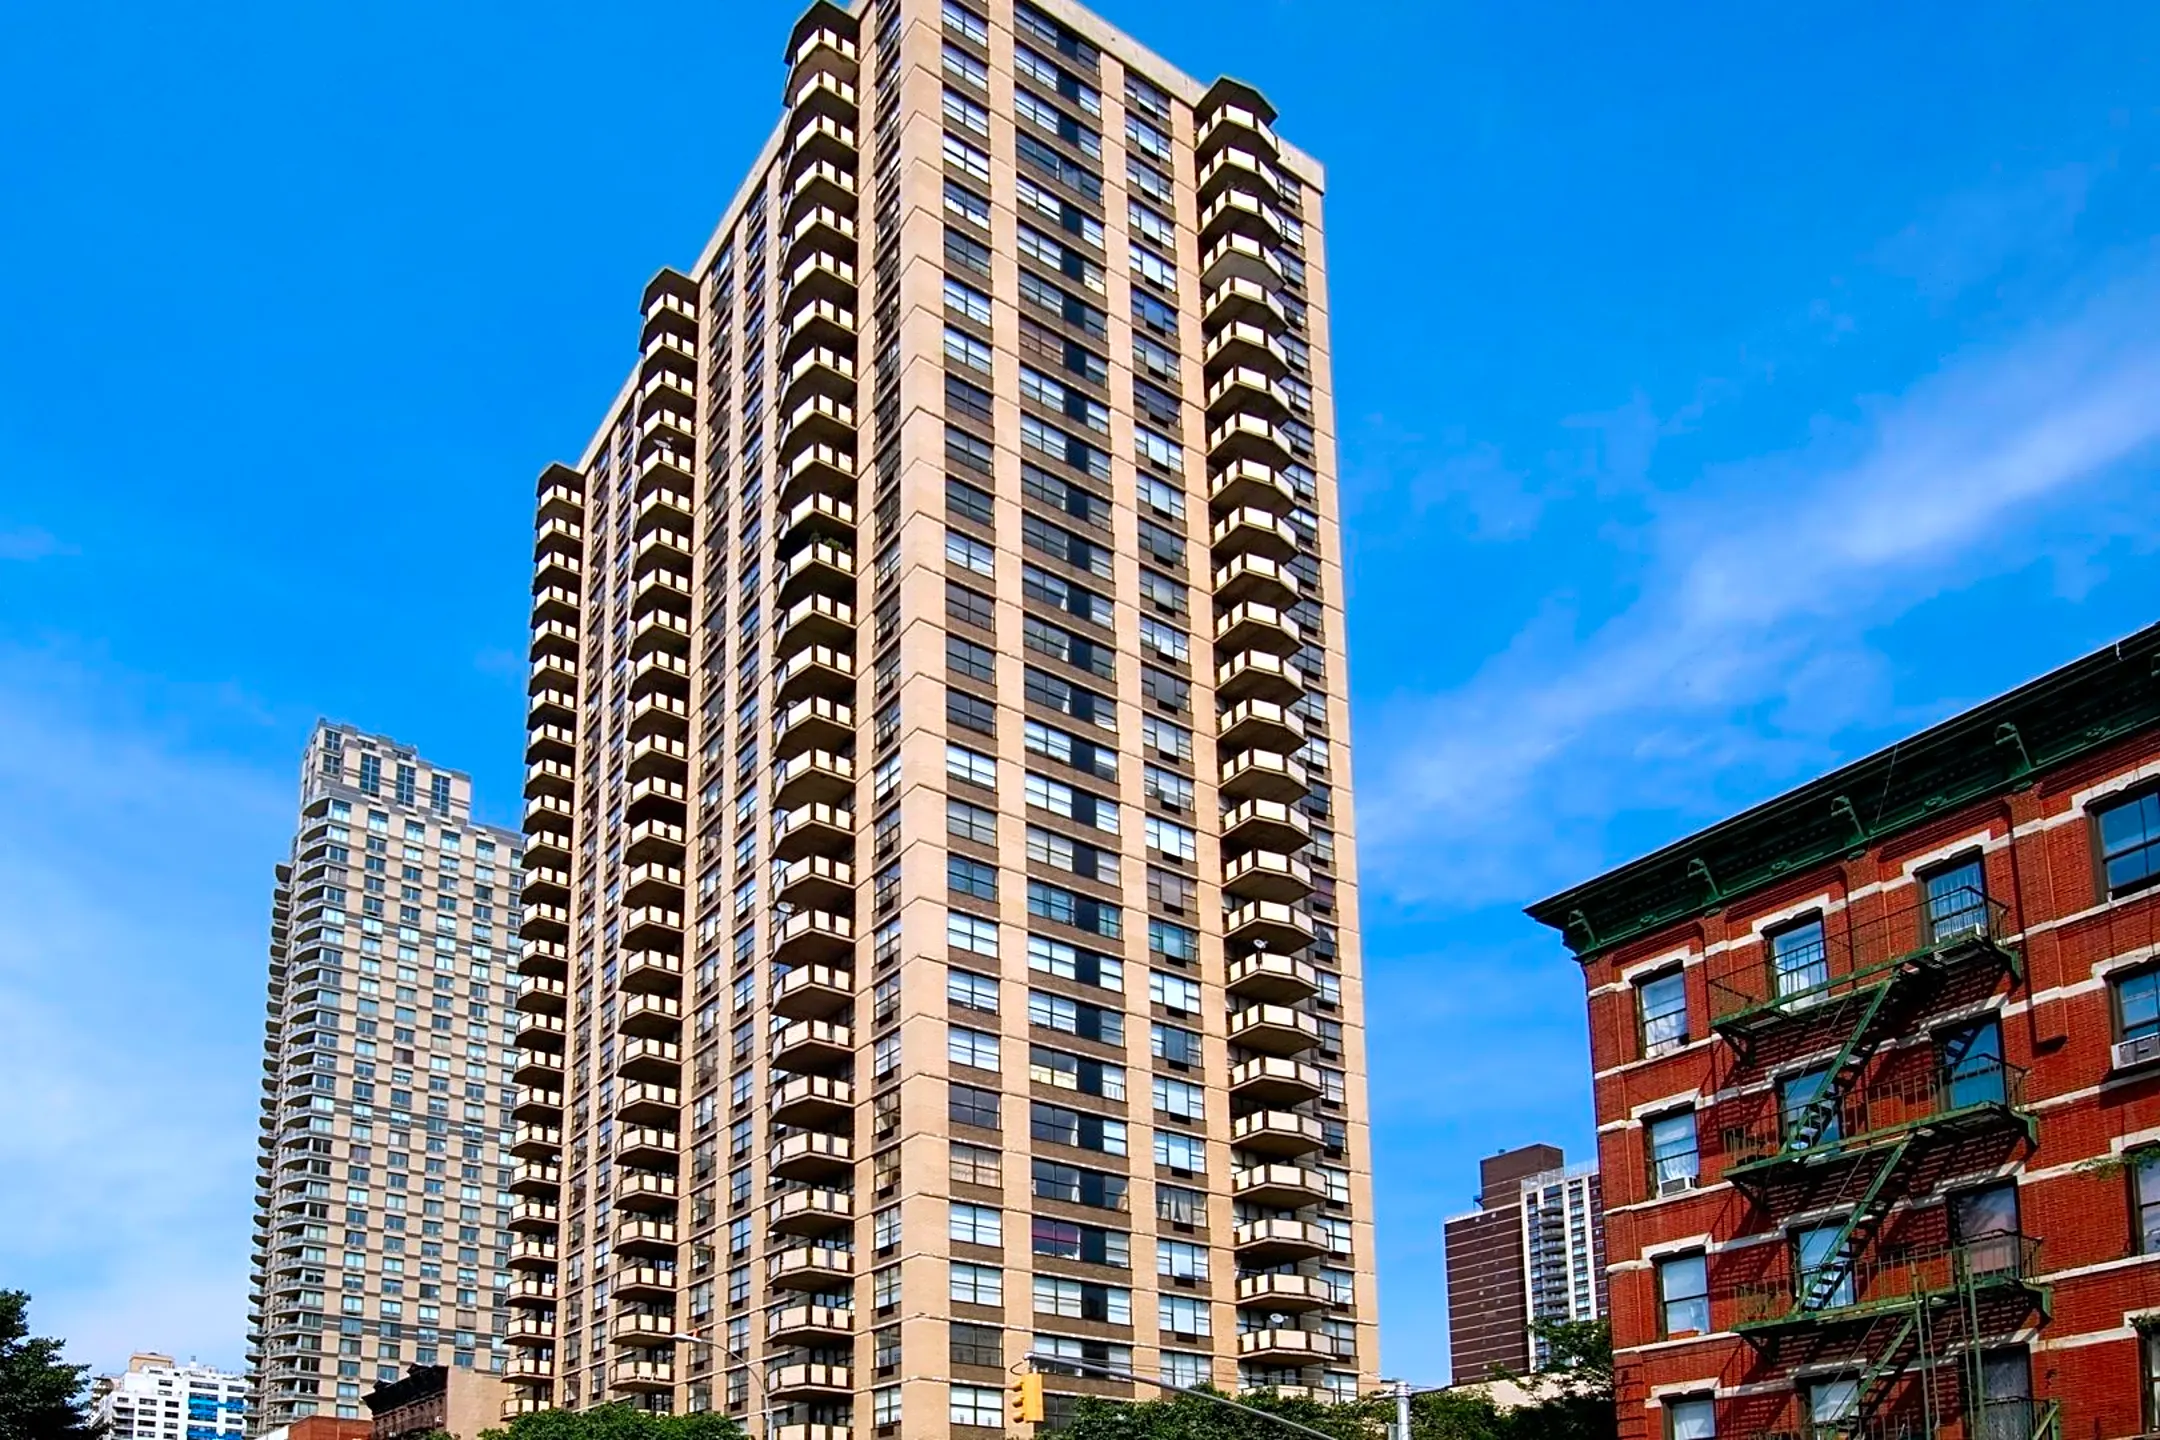 11 E 1st St 11 E 1st St Unit 1 508 New York Ny Apartments For Rent 